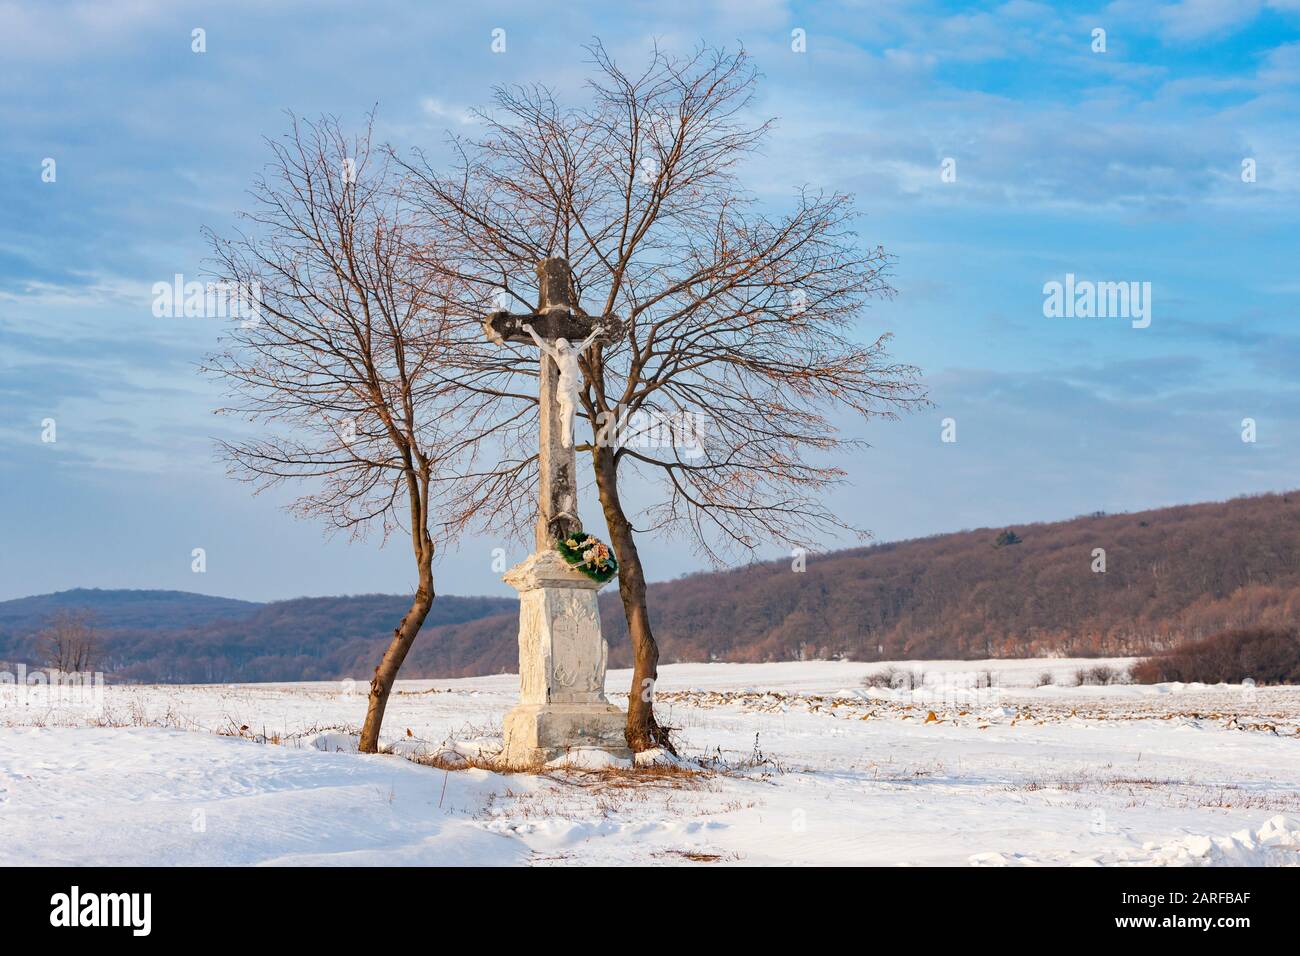 Gods tortue near Velka Trna, Tokaj region, Slovakia. Stock Photo